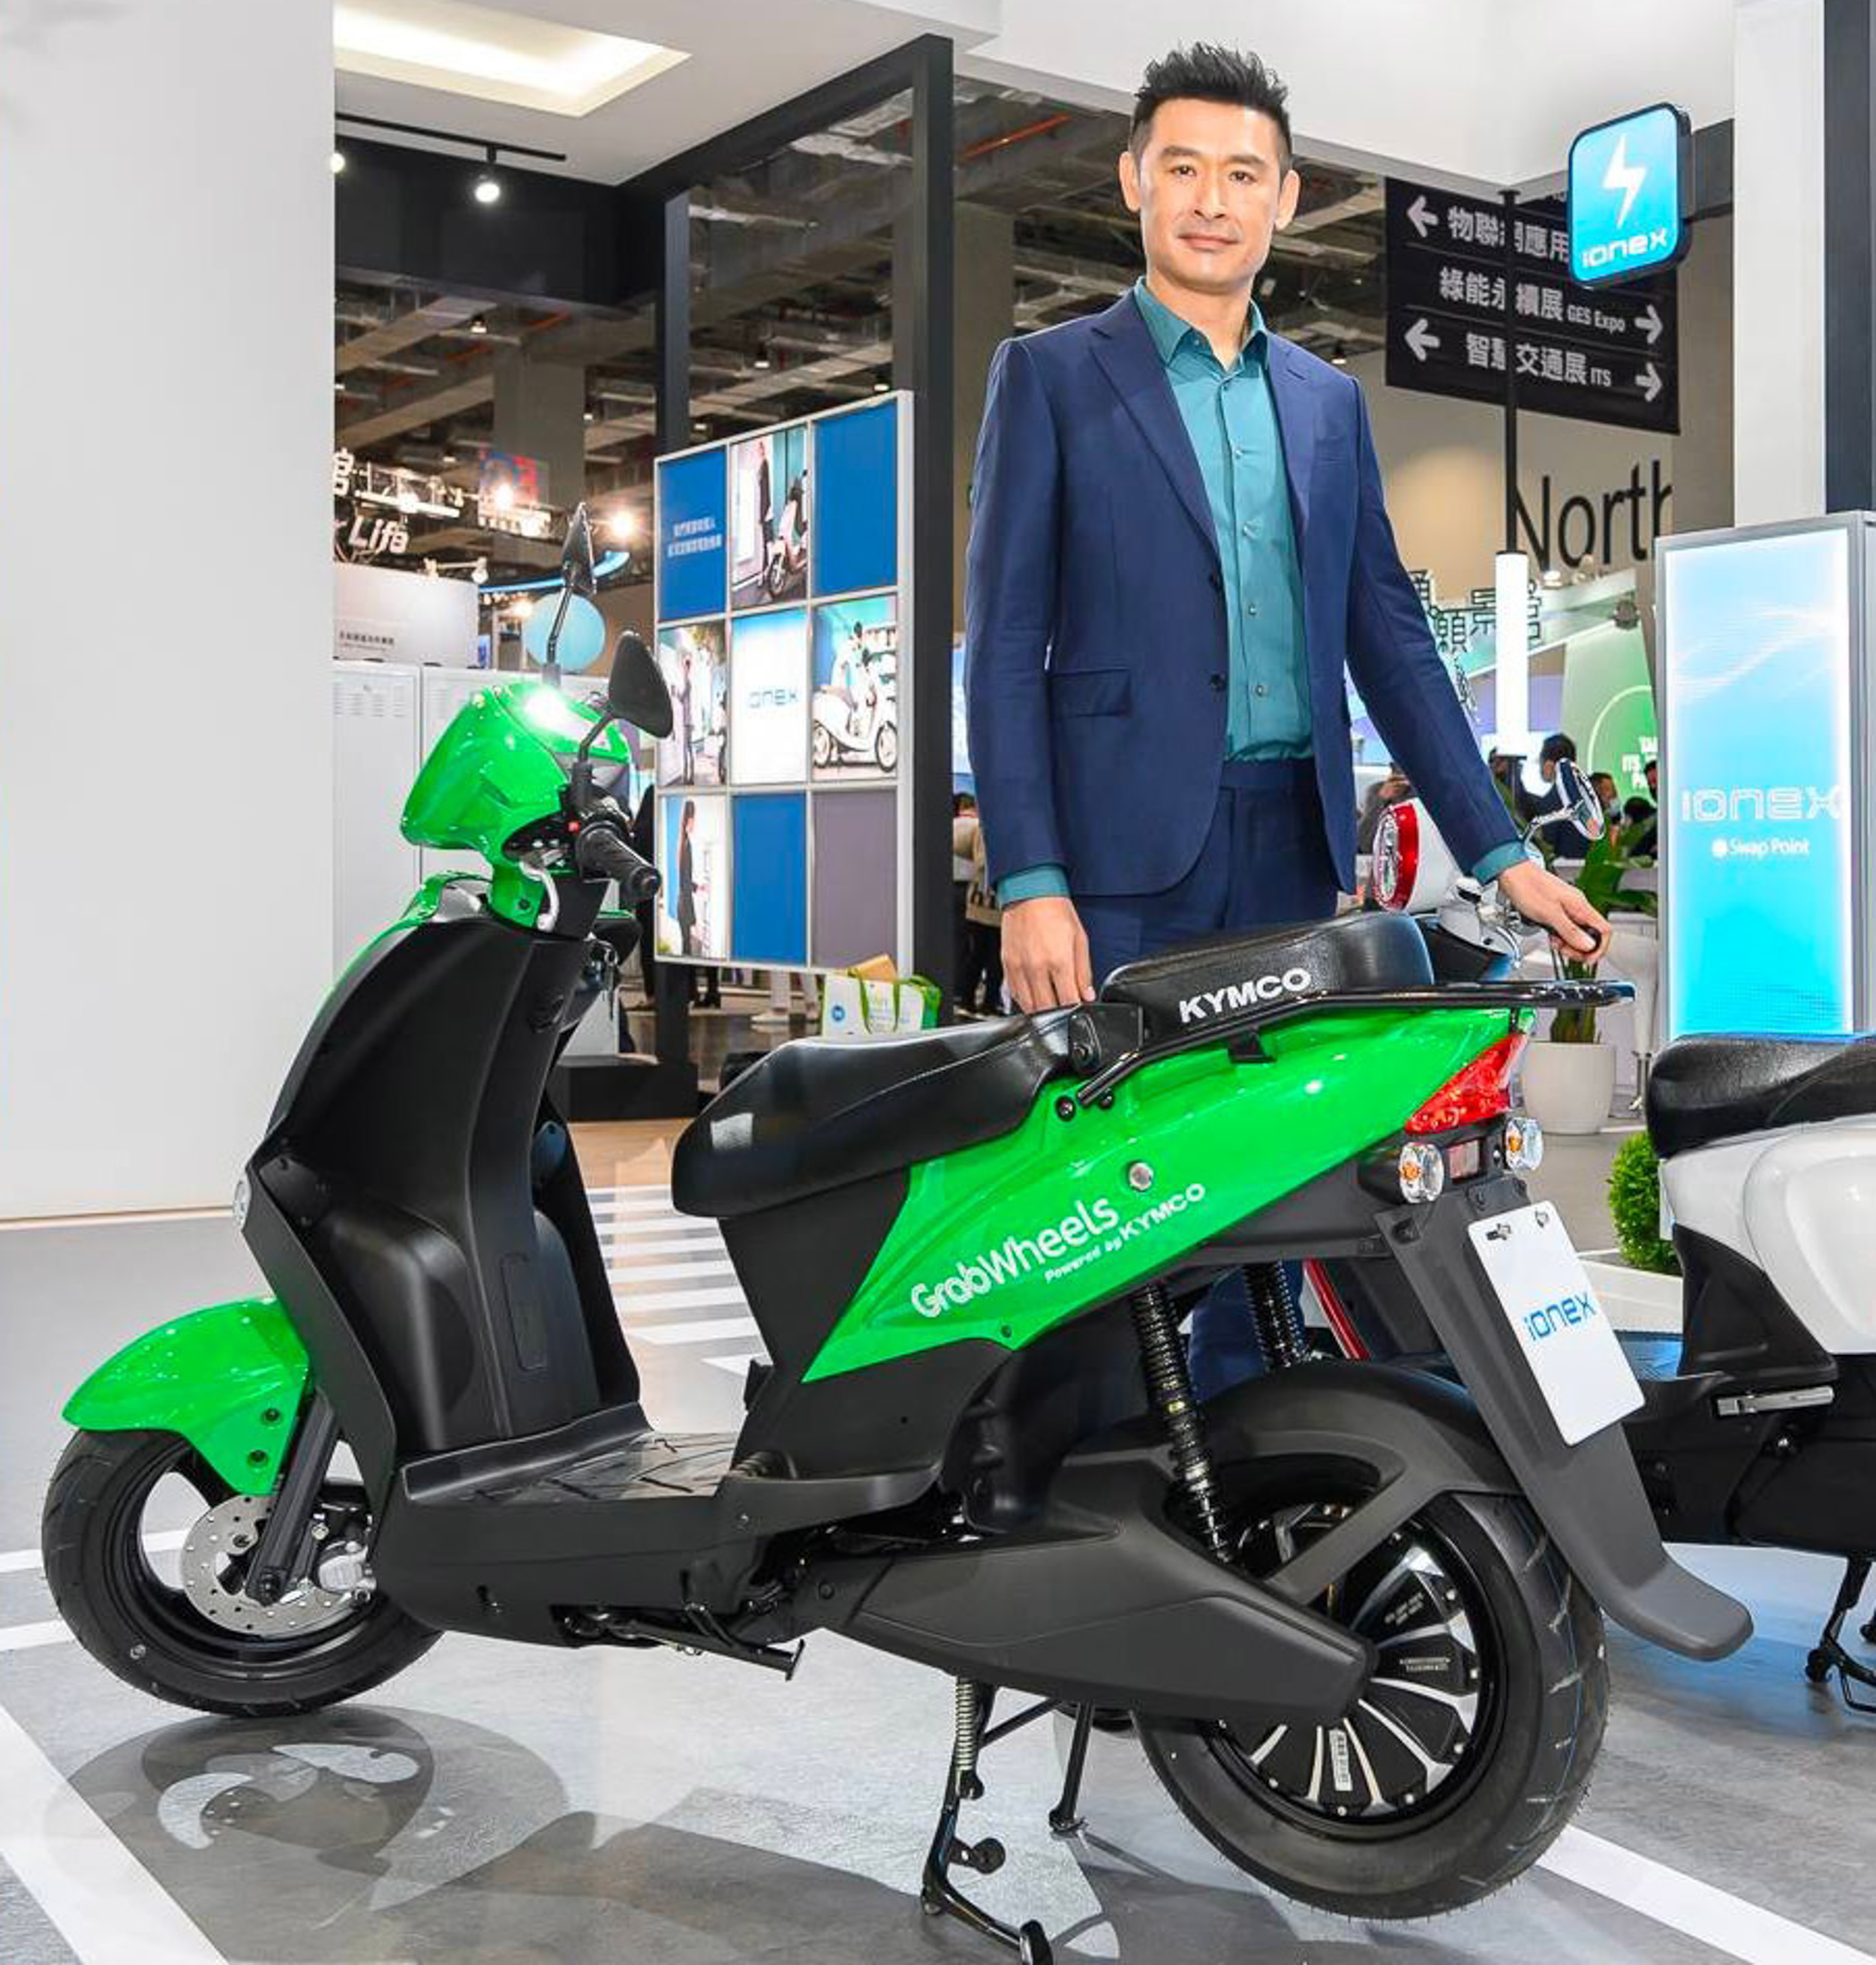 光陽集團董事長柯勝峯表示透過資本戰略合作，與台灣大車隊集團共同推動 Ionex 車能網到台灣配送產業的最後一哩路，一起打造智慧城市交通物流的全新典範。